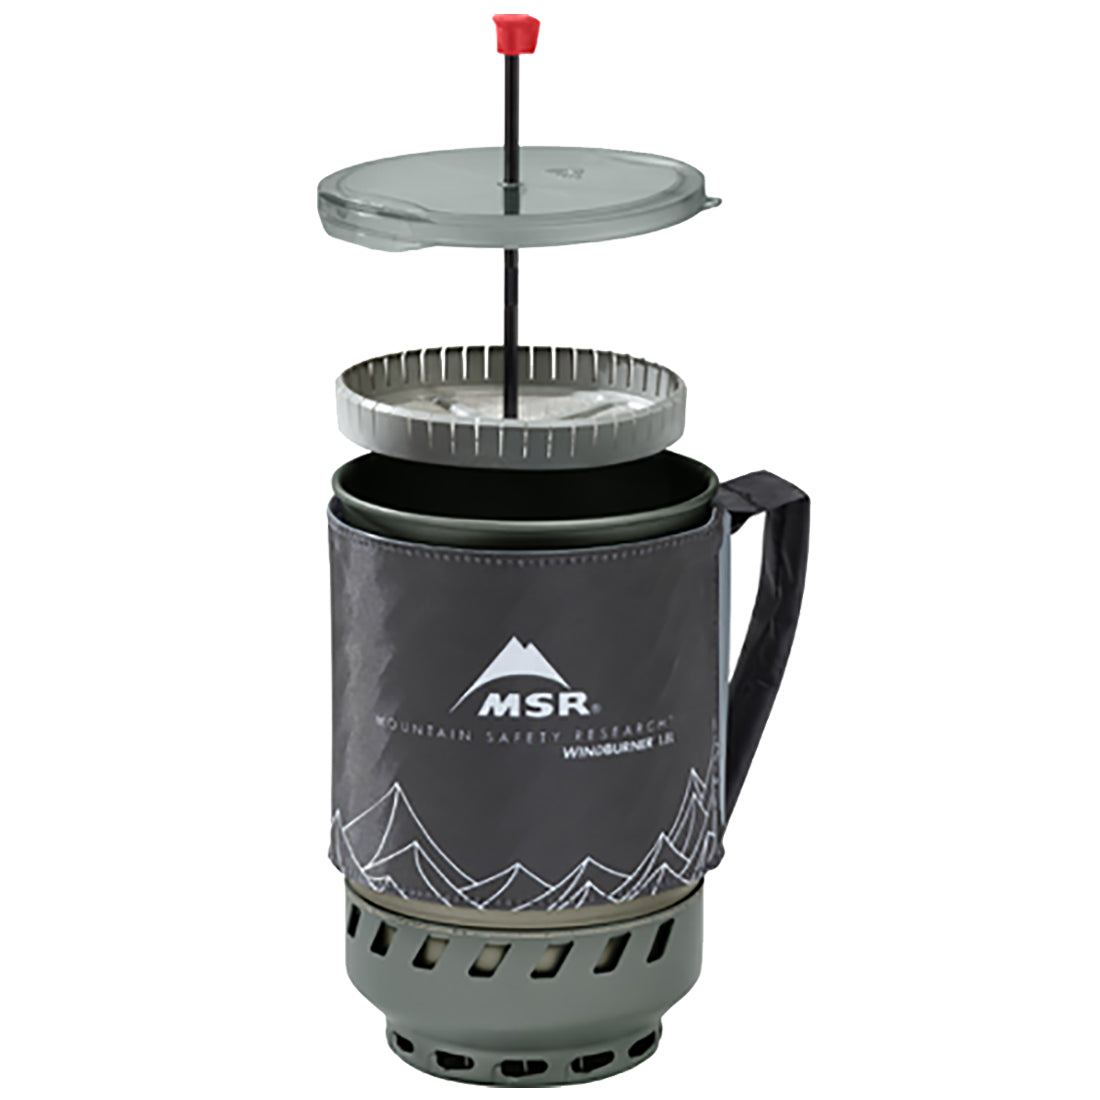 MSR (Cascade Designs) Coffee Press Kit Windburner